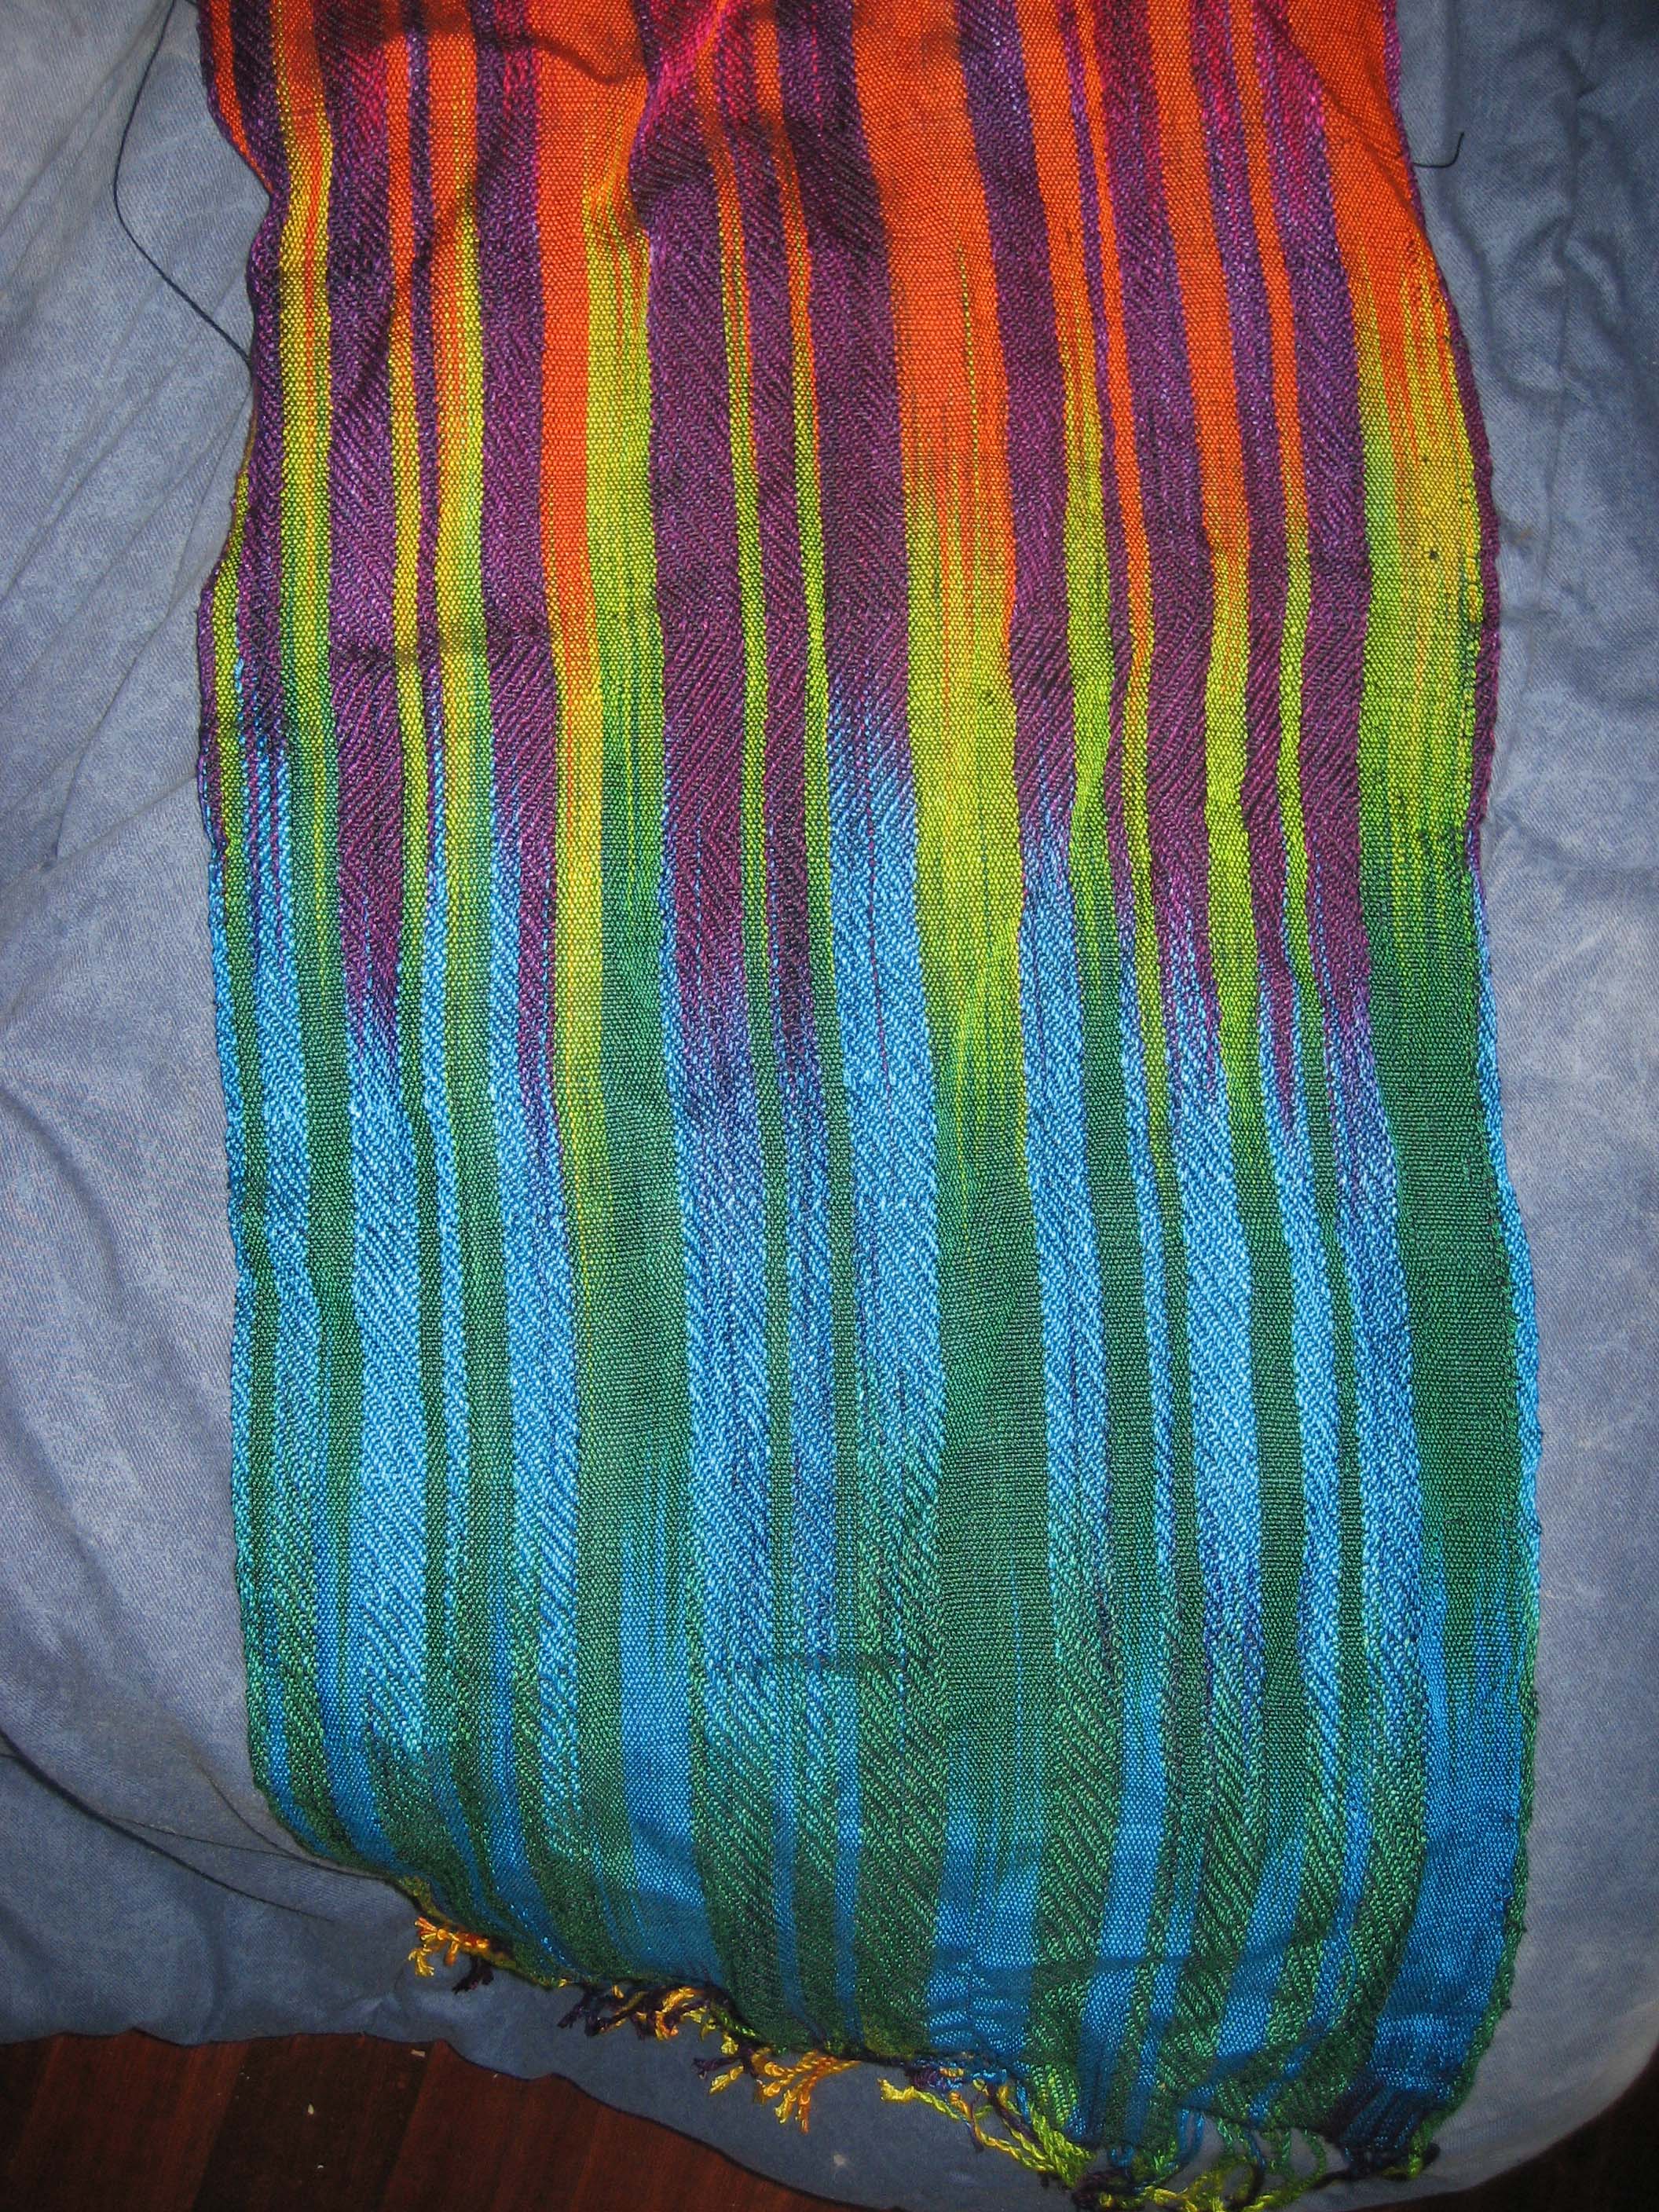 painted warp shawl closeup